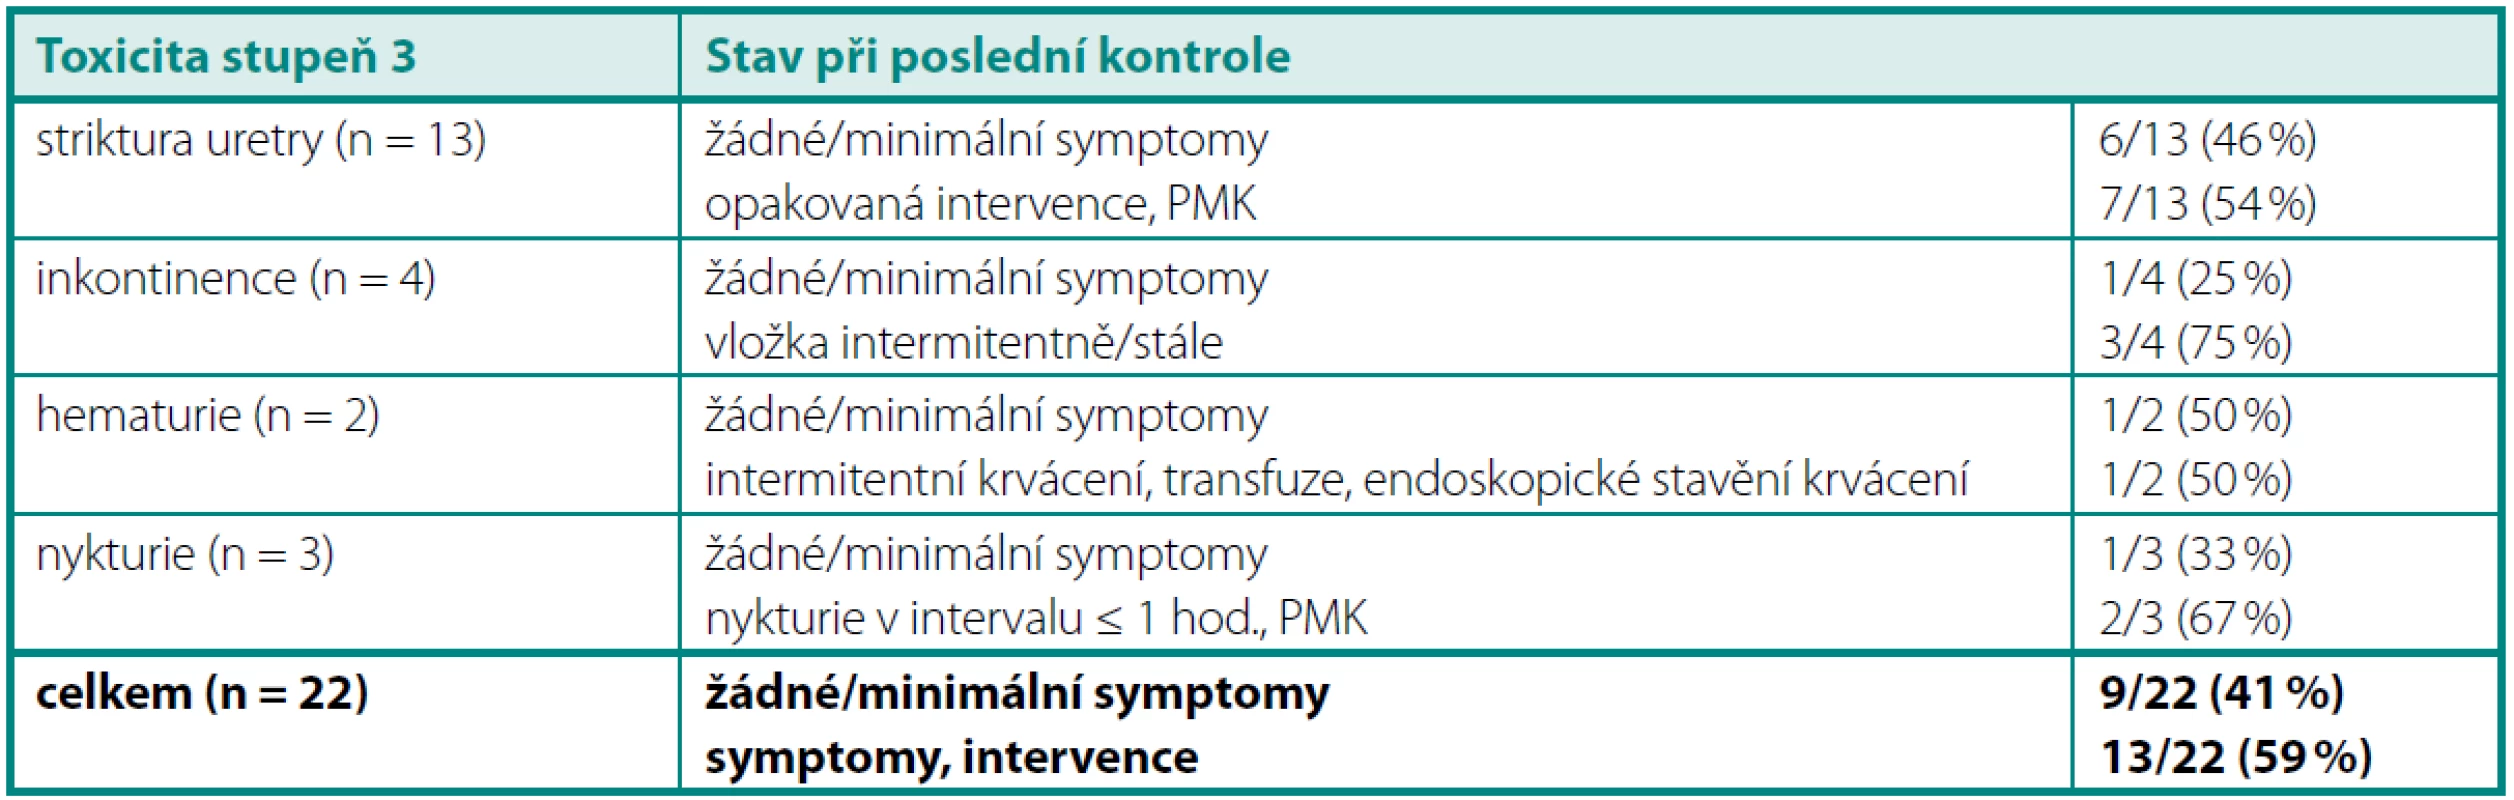 Profil chronické urinární toxicity 3. stupně
Table 3. Profile of Grade 3 late urinary toxicity